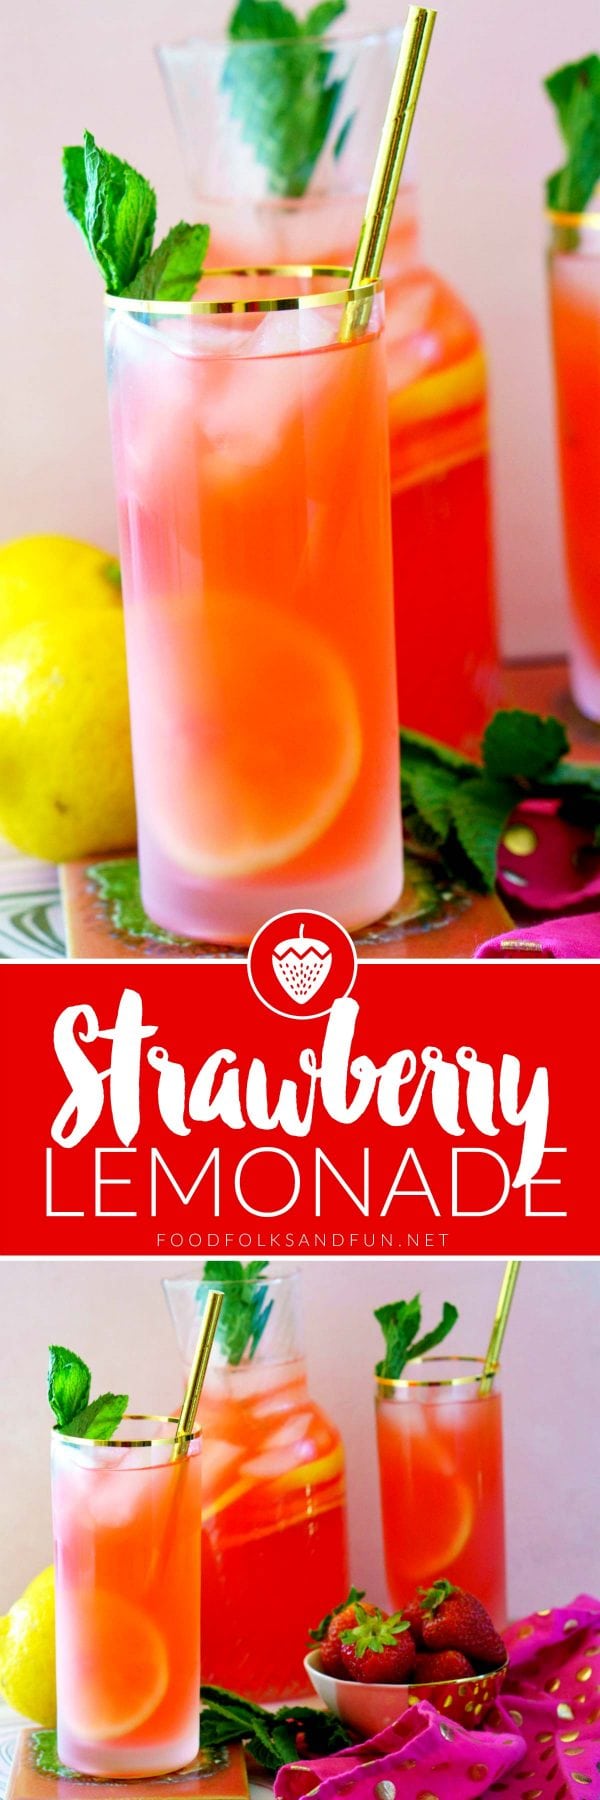 Delicious, homemade Strawberry Lemonade recipe.